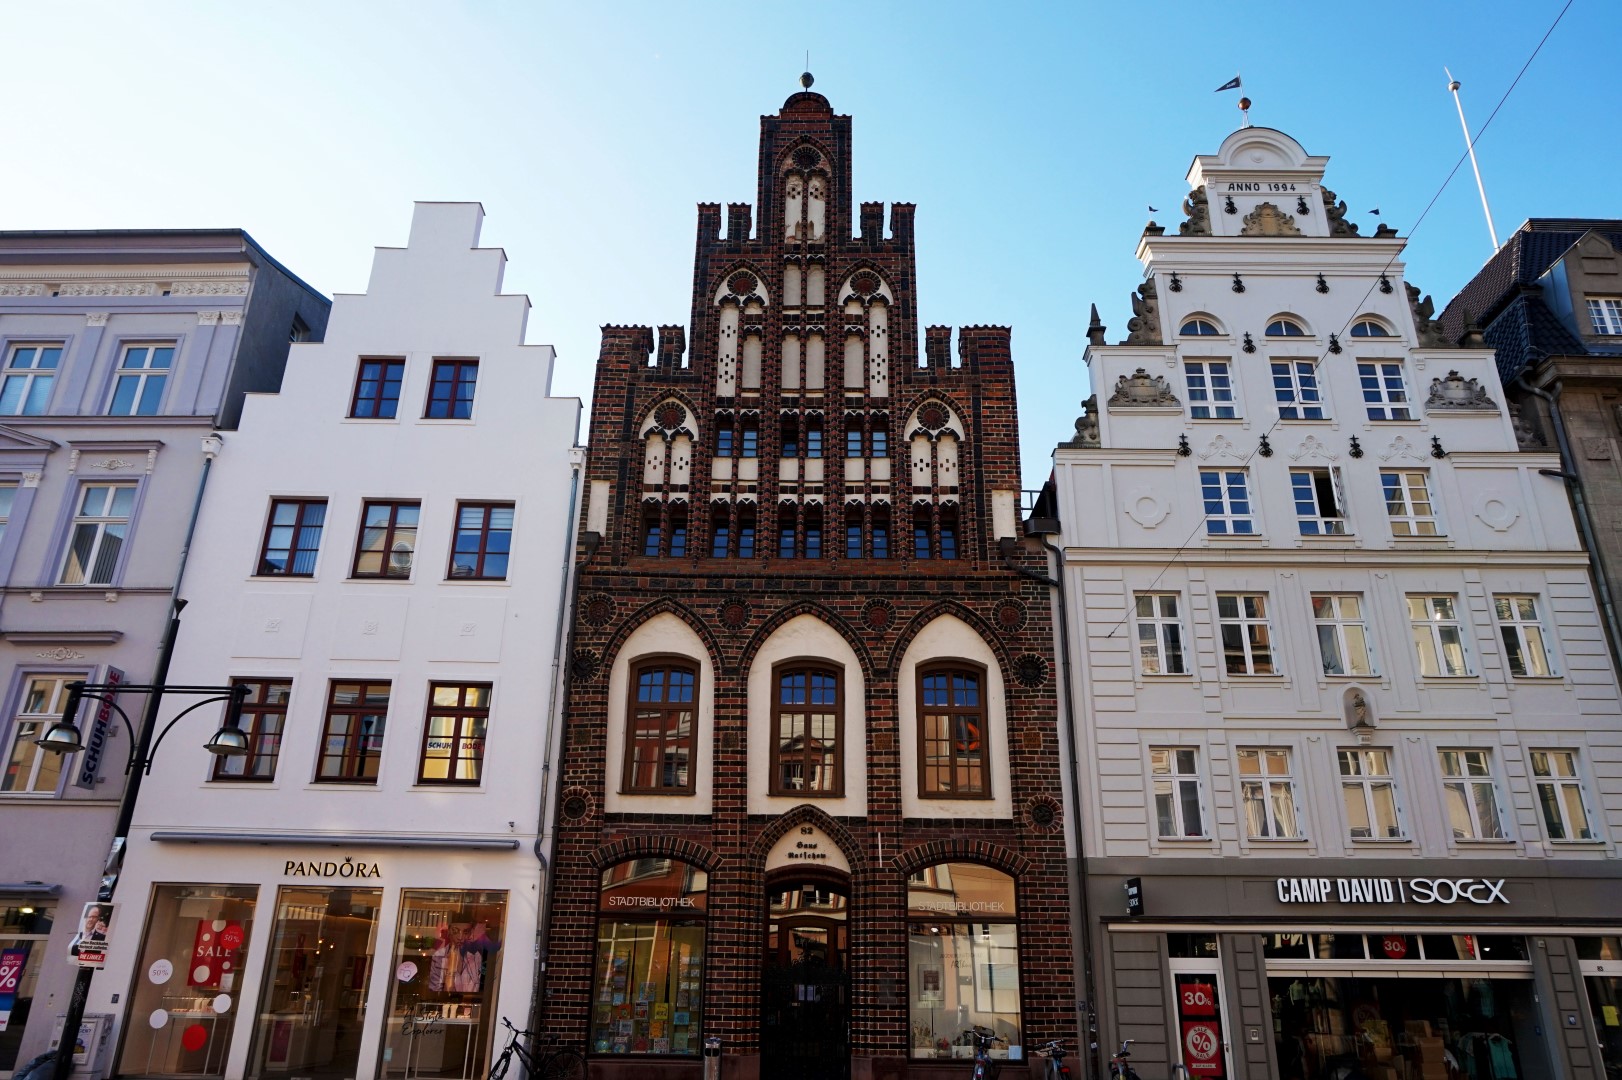 Un jour à Rostock et Warnemünde - City Guide - Blog voyage